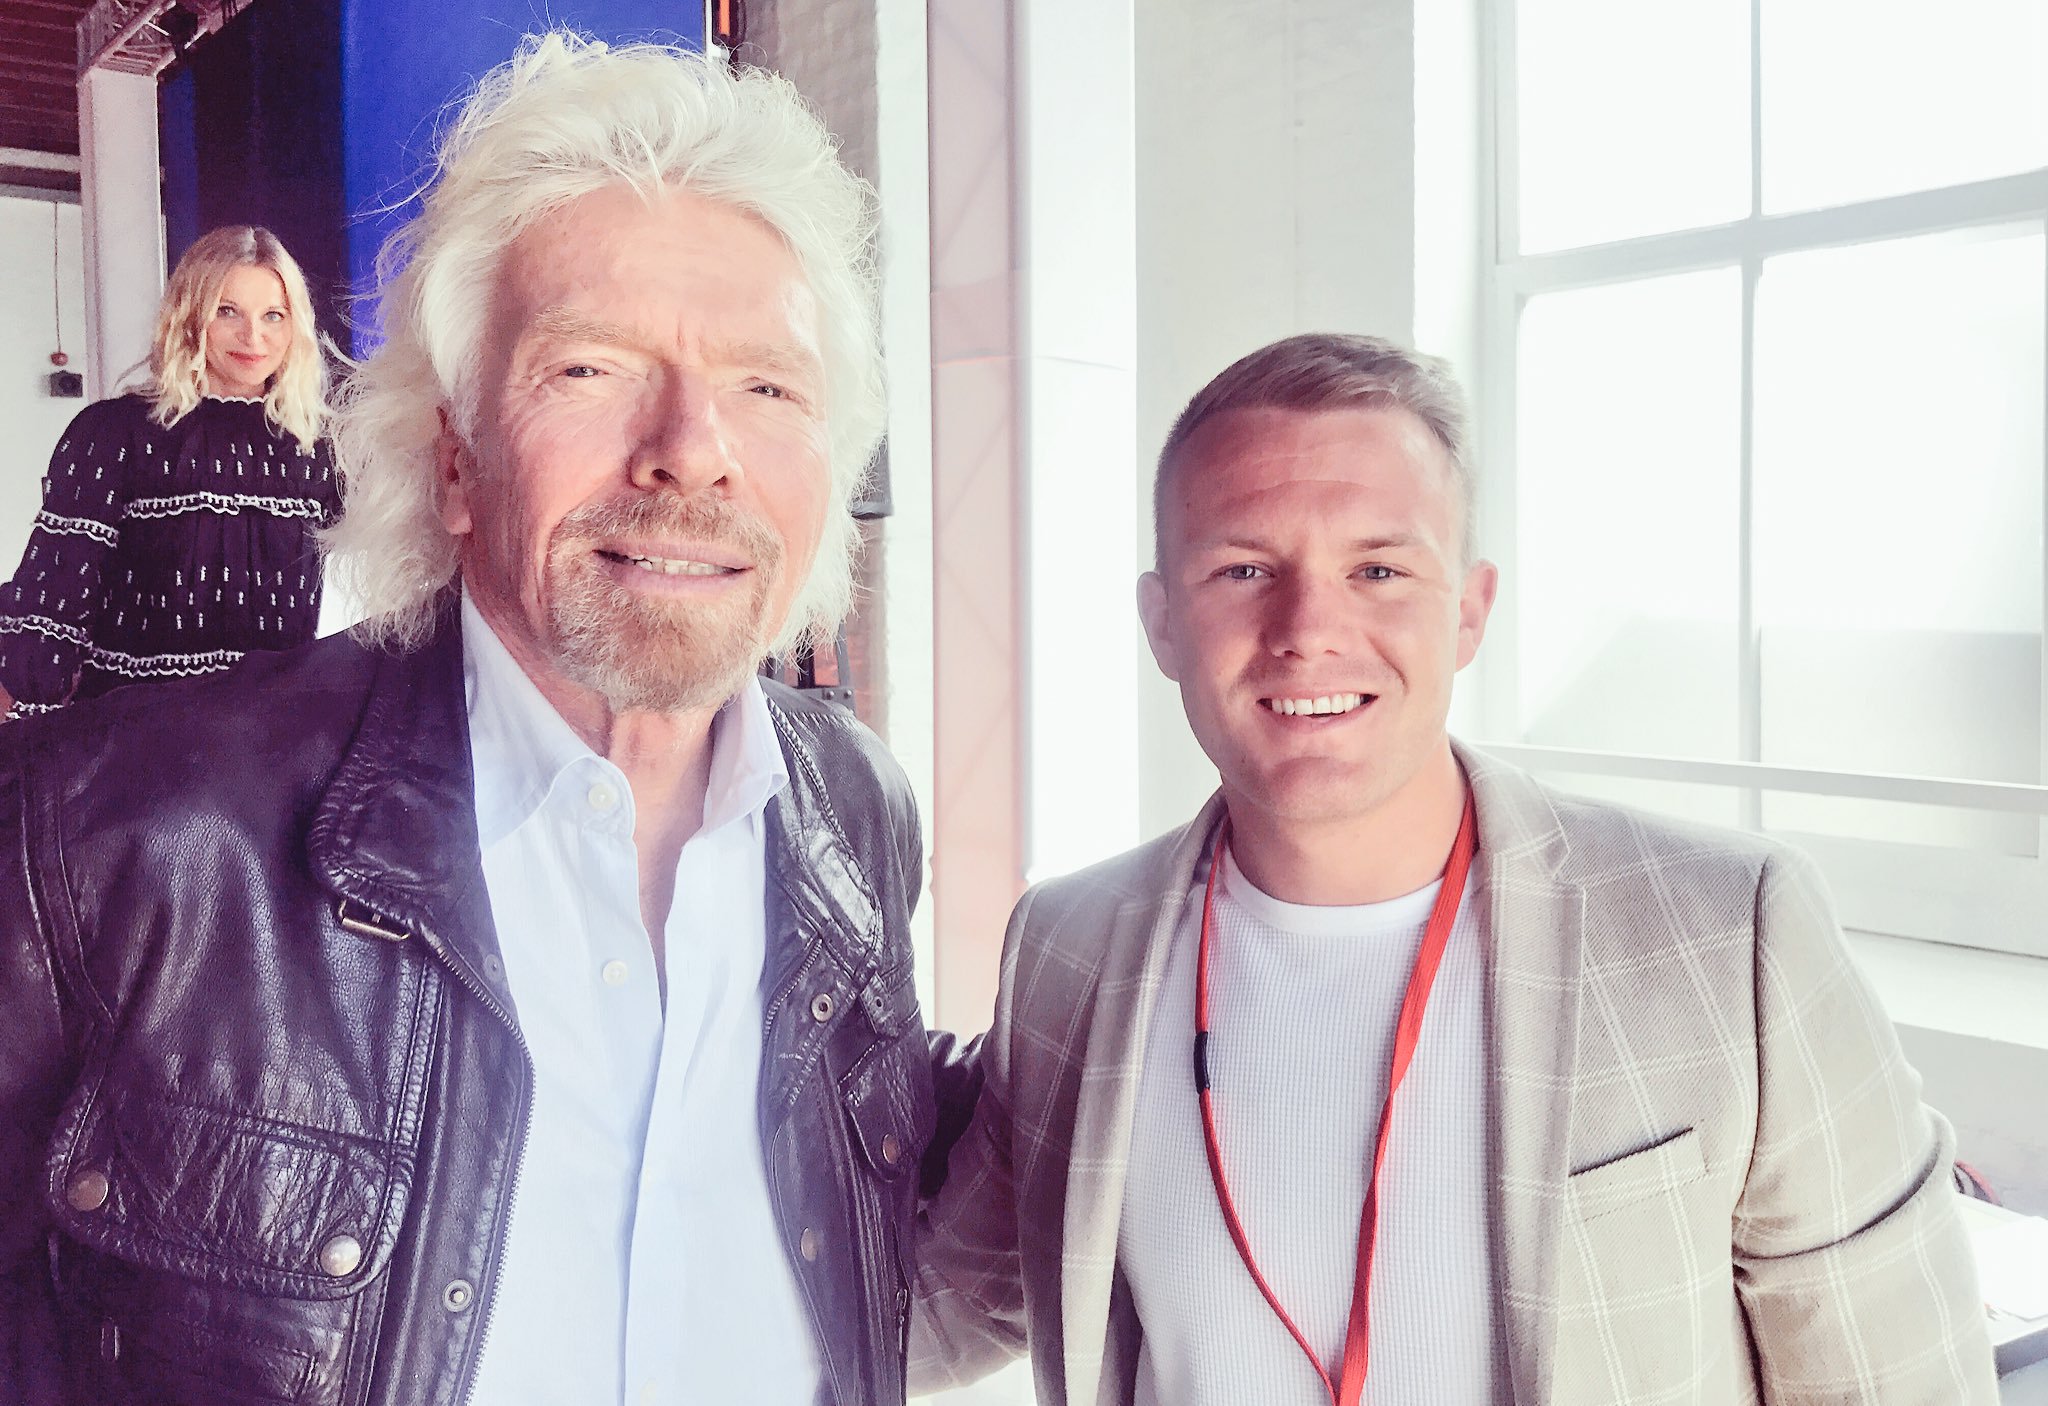 Nachdem er von Virgin gebeten wurde, an einem Wettbewerb zur Suche nach neuen Start-ups teilzunehmen, schlug der 21-jährige Luke Richard Branson vor